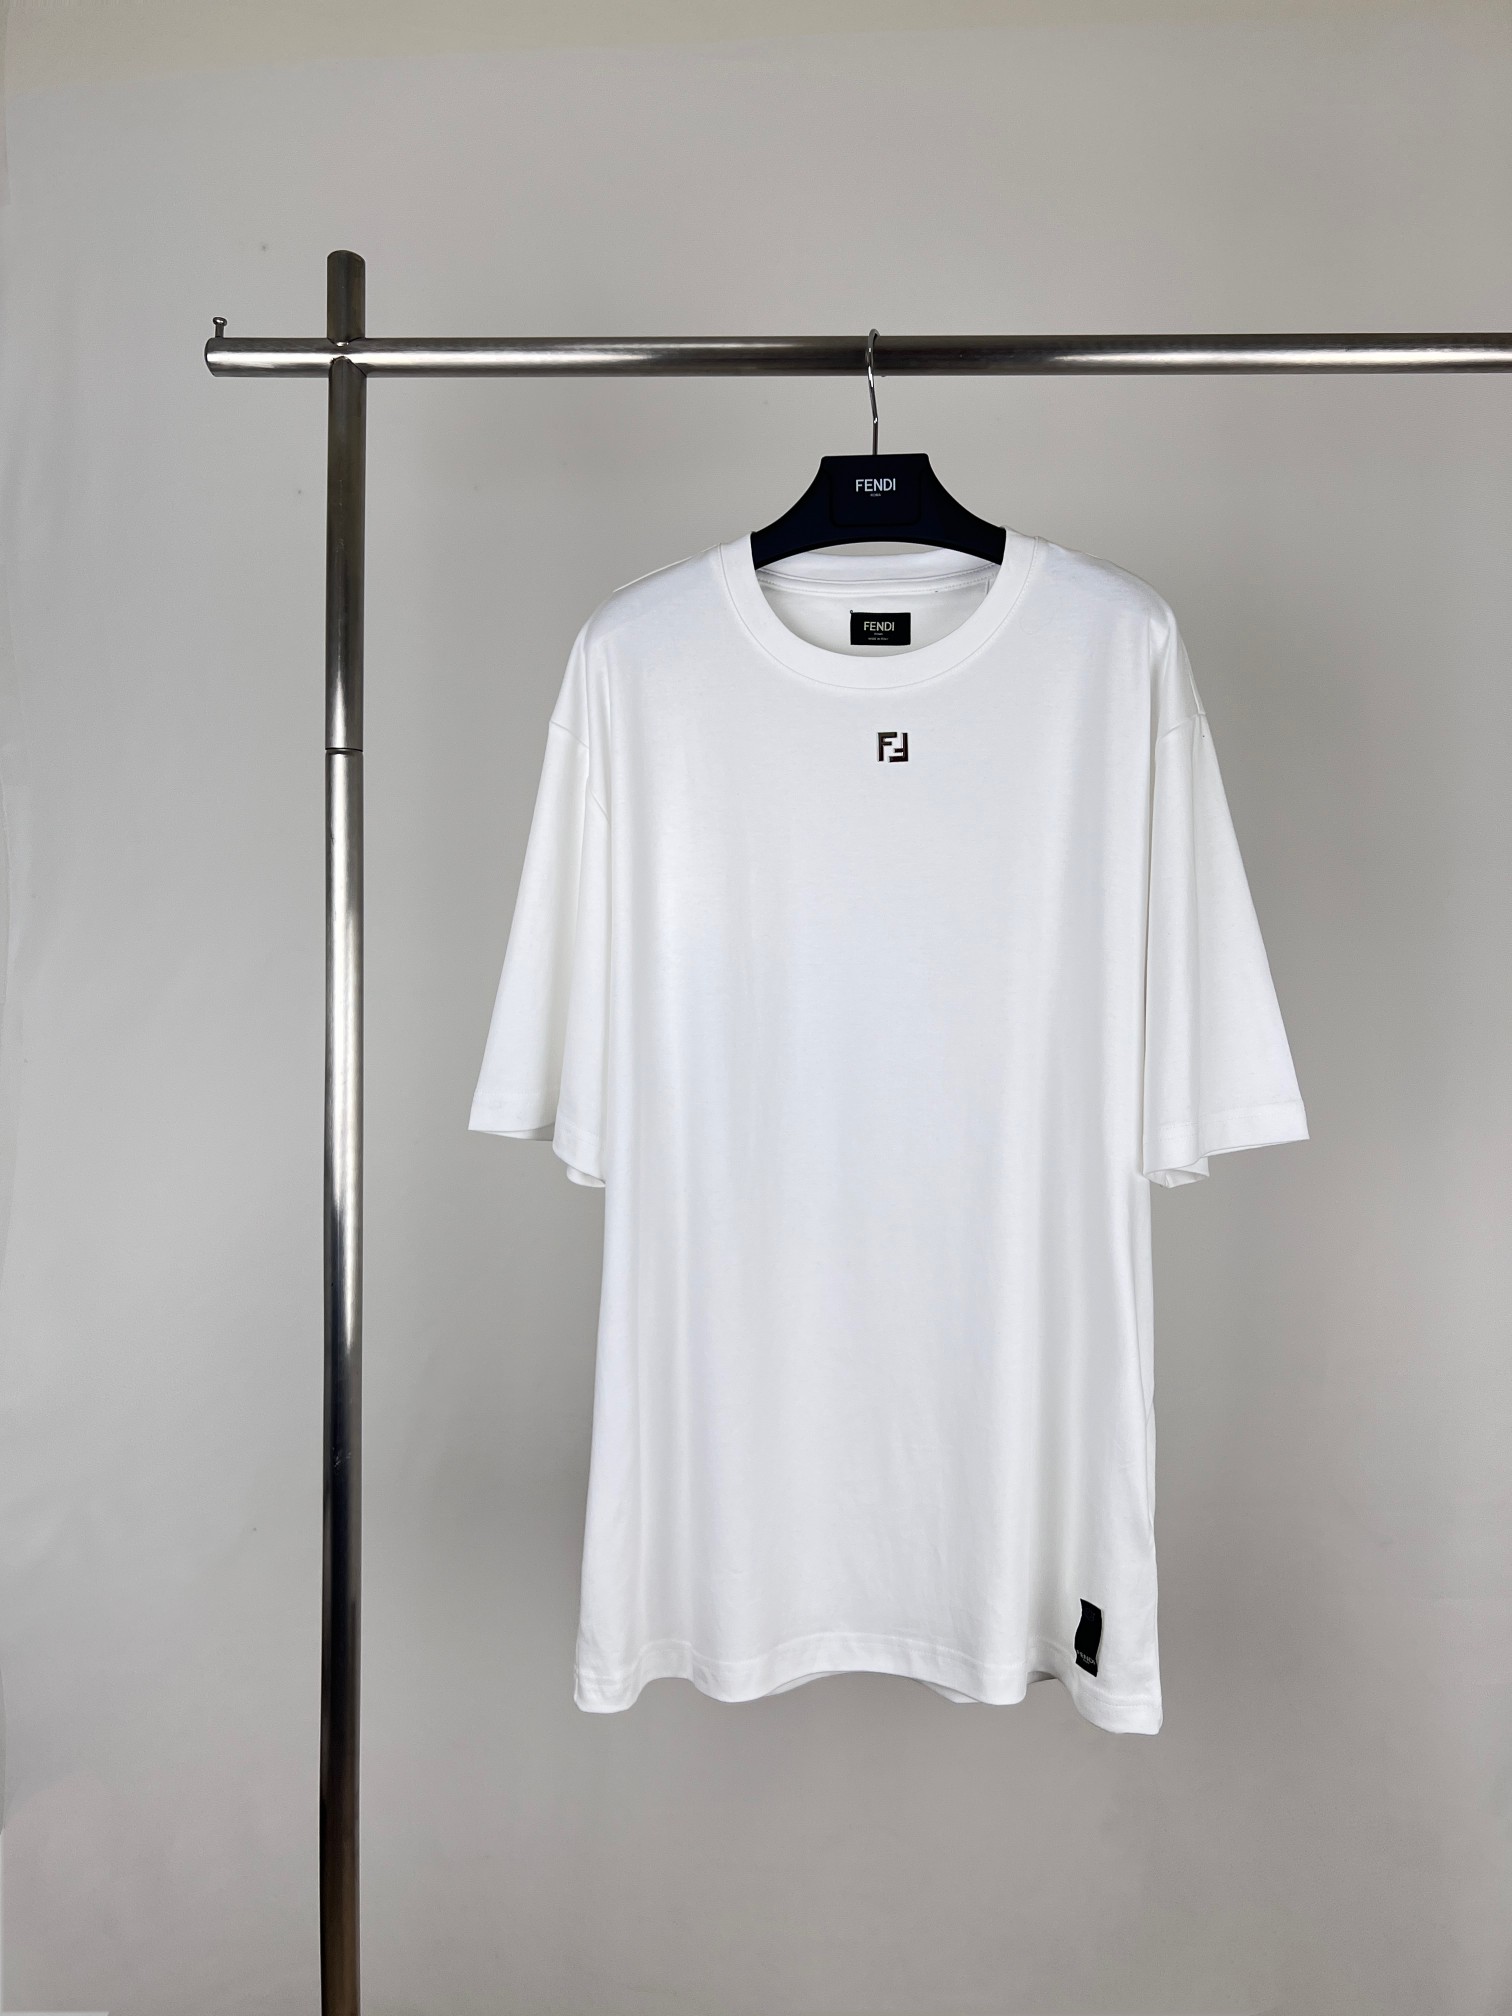 Fendi Clothing T-Shirt Short Sleeve